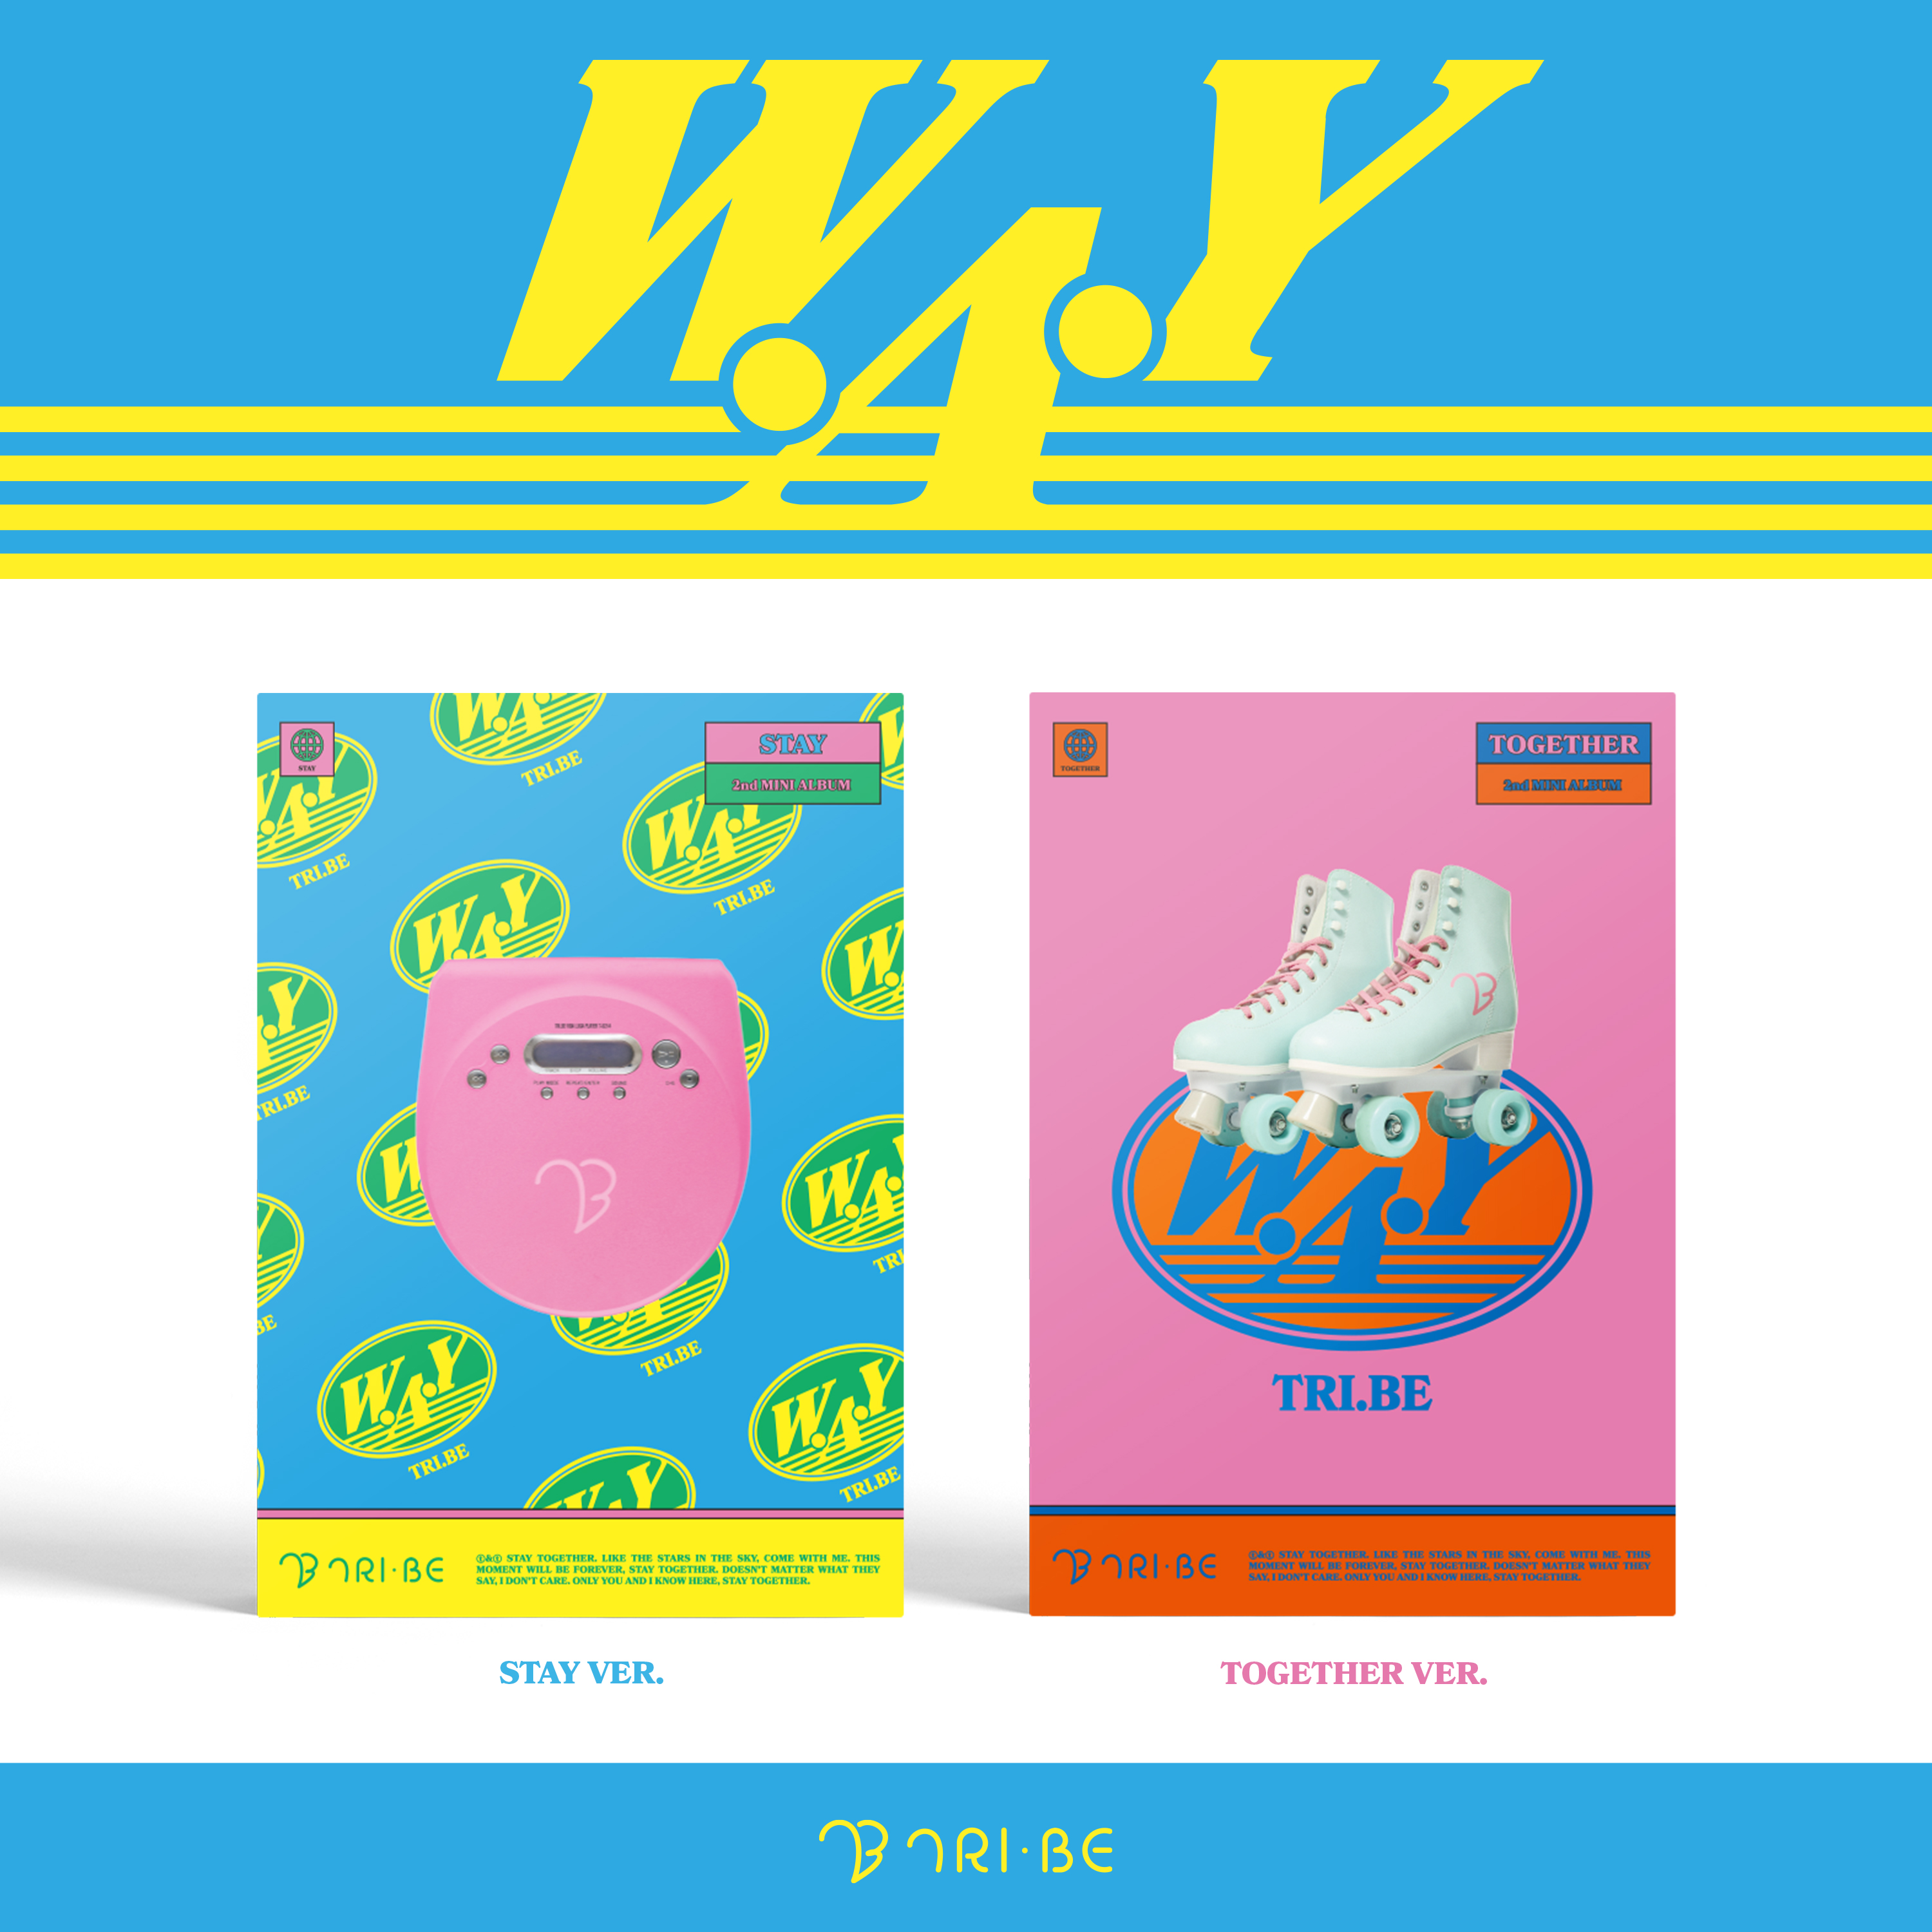 [Ktown4u Special Gift] TRI.BE - 2nd Mini Album [W.A.Y] (Random Ver.)